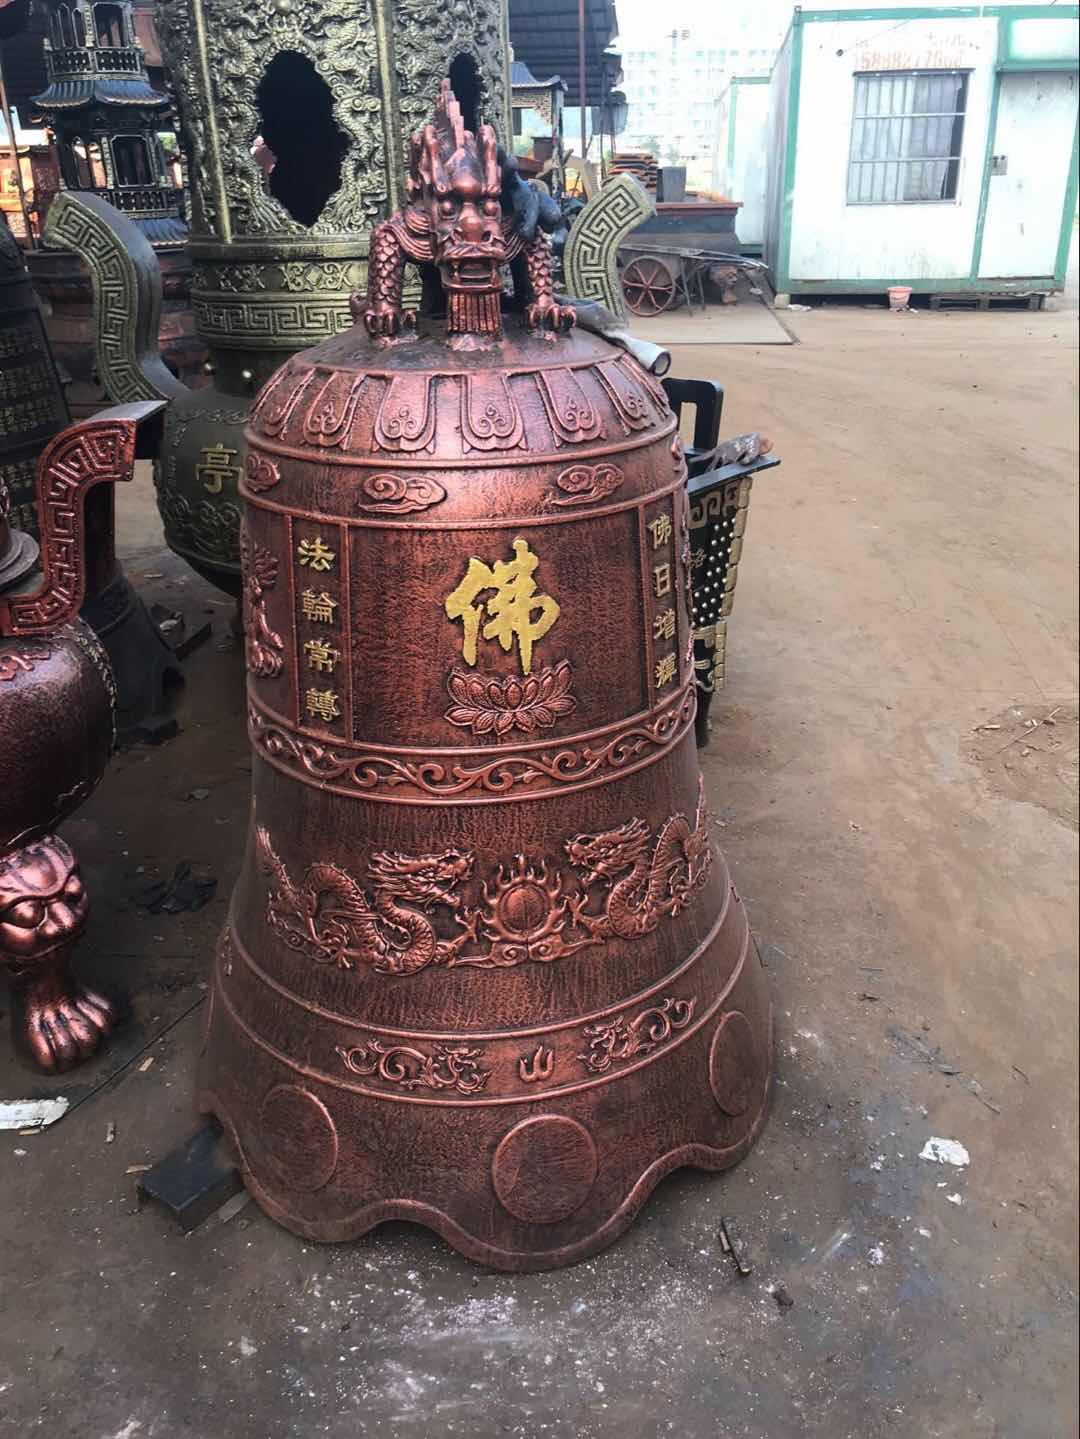 铁钟 温州汇缘法器厂生产铸造寺庙铁钟 钟铁钟 钟楼铁钟